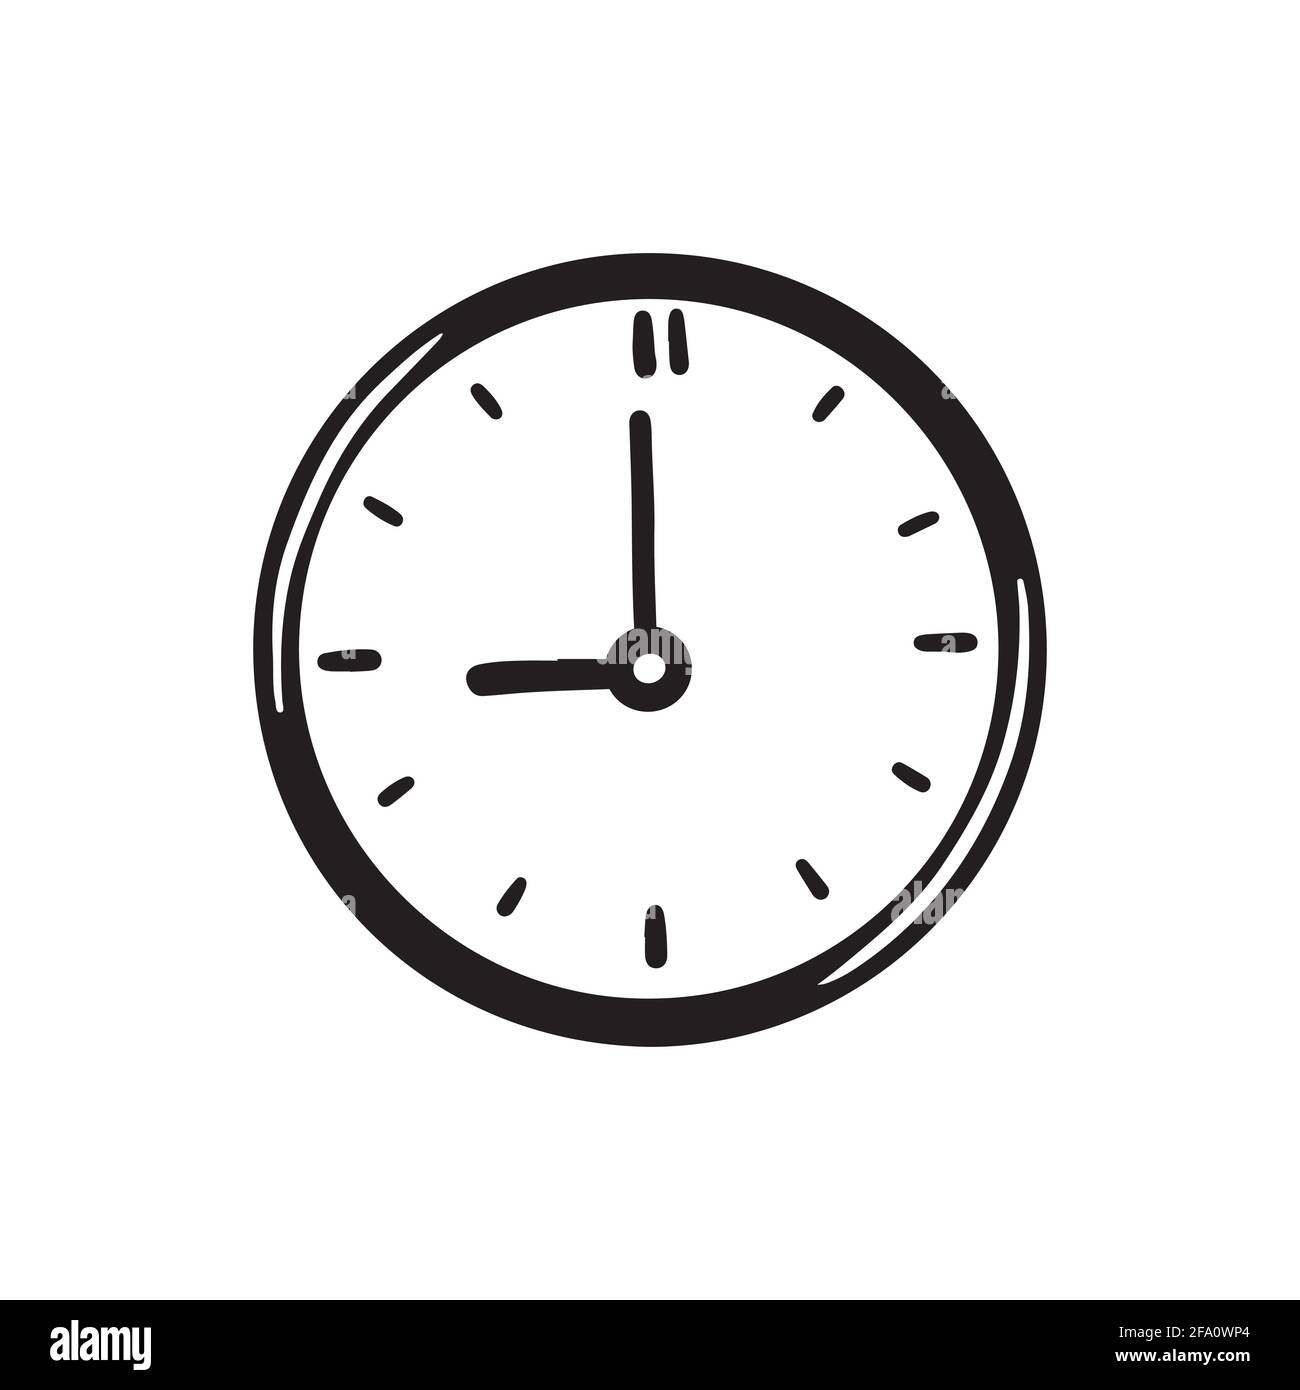 Cercle simple tracé à la main icône en forme d'horloge de couleur noire.  Style d'esquisse Doodle. Concept de temps, minute, date limite. Horloge  avec flèche sur fond blanc Image Vectorielle Stock -